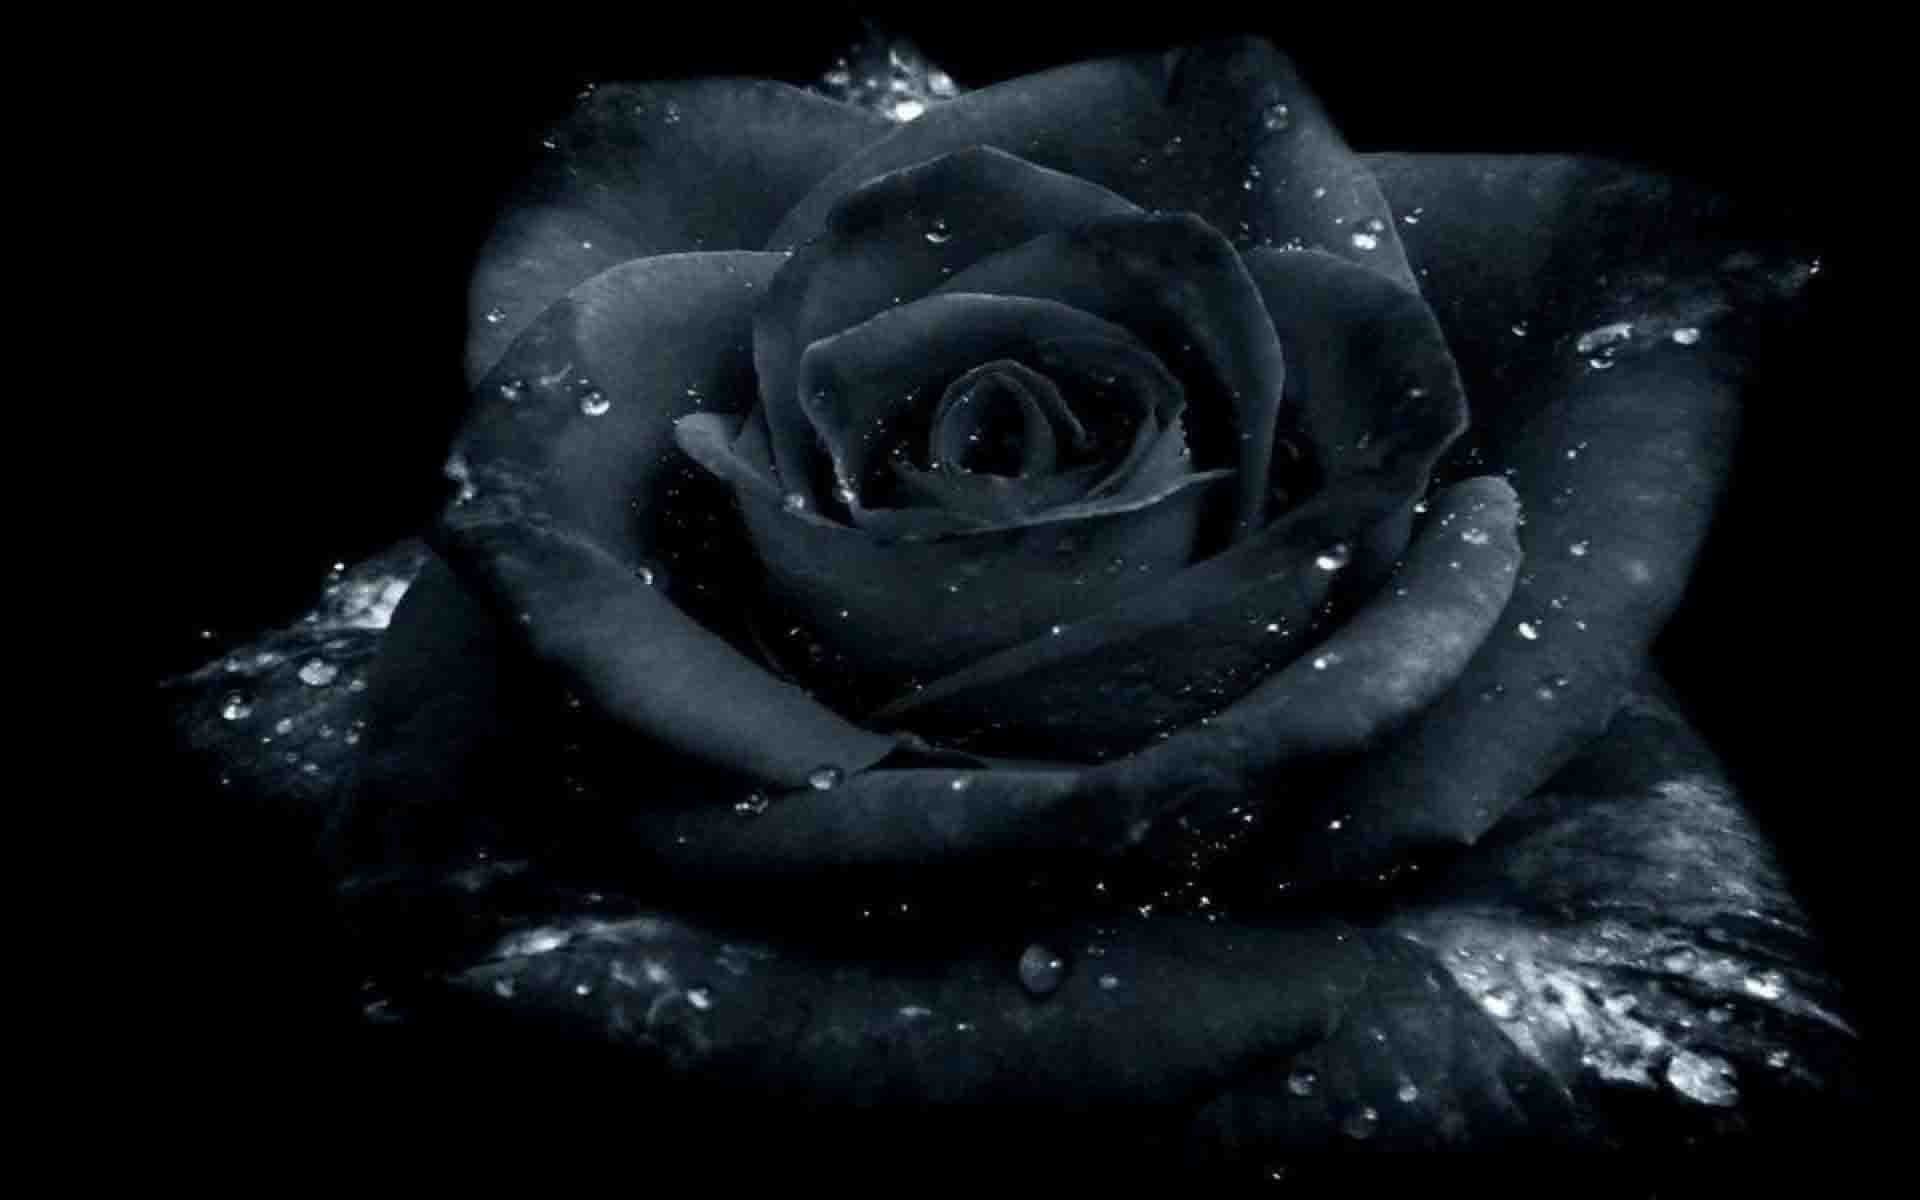 Khám phá sự đẹp đầy bí ẩn của hoa hồng đen với bức hình nền tuyệt đẹp này. Với những cánh hoa mê đắm và màu đen bí ẩn, hình nền này sẽ giúp bạn thư giãn sau những giờ làm việc căng thẳng và đem đến cho bạn cảm giác thật tuyệt vời.